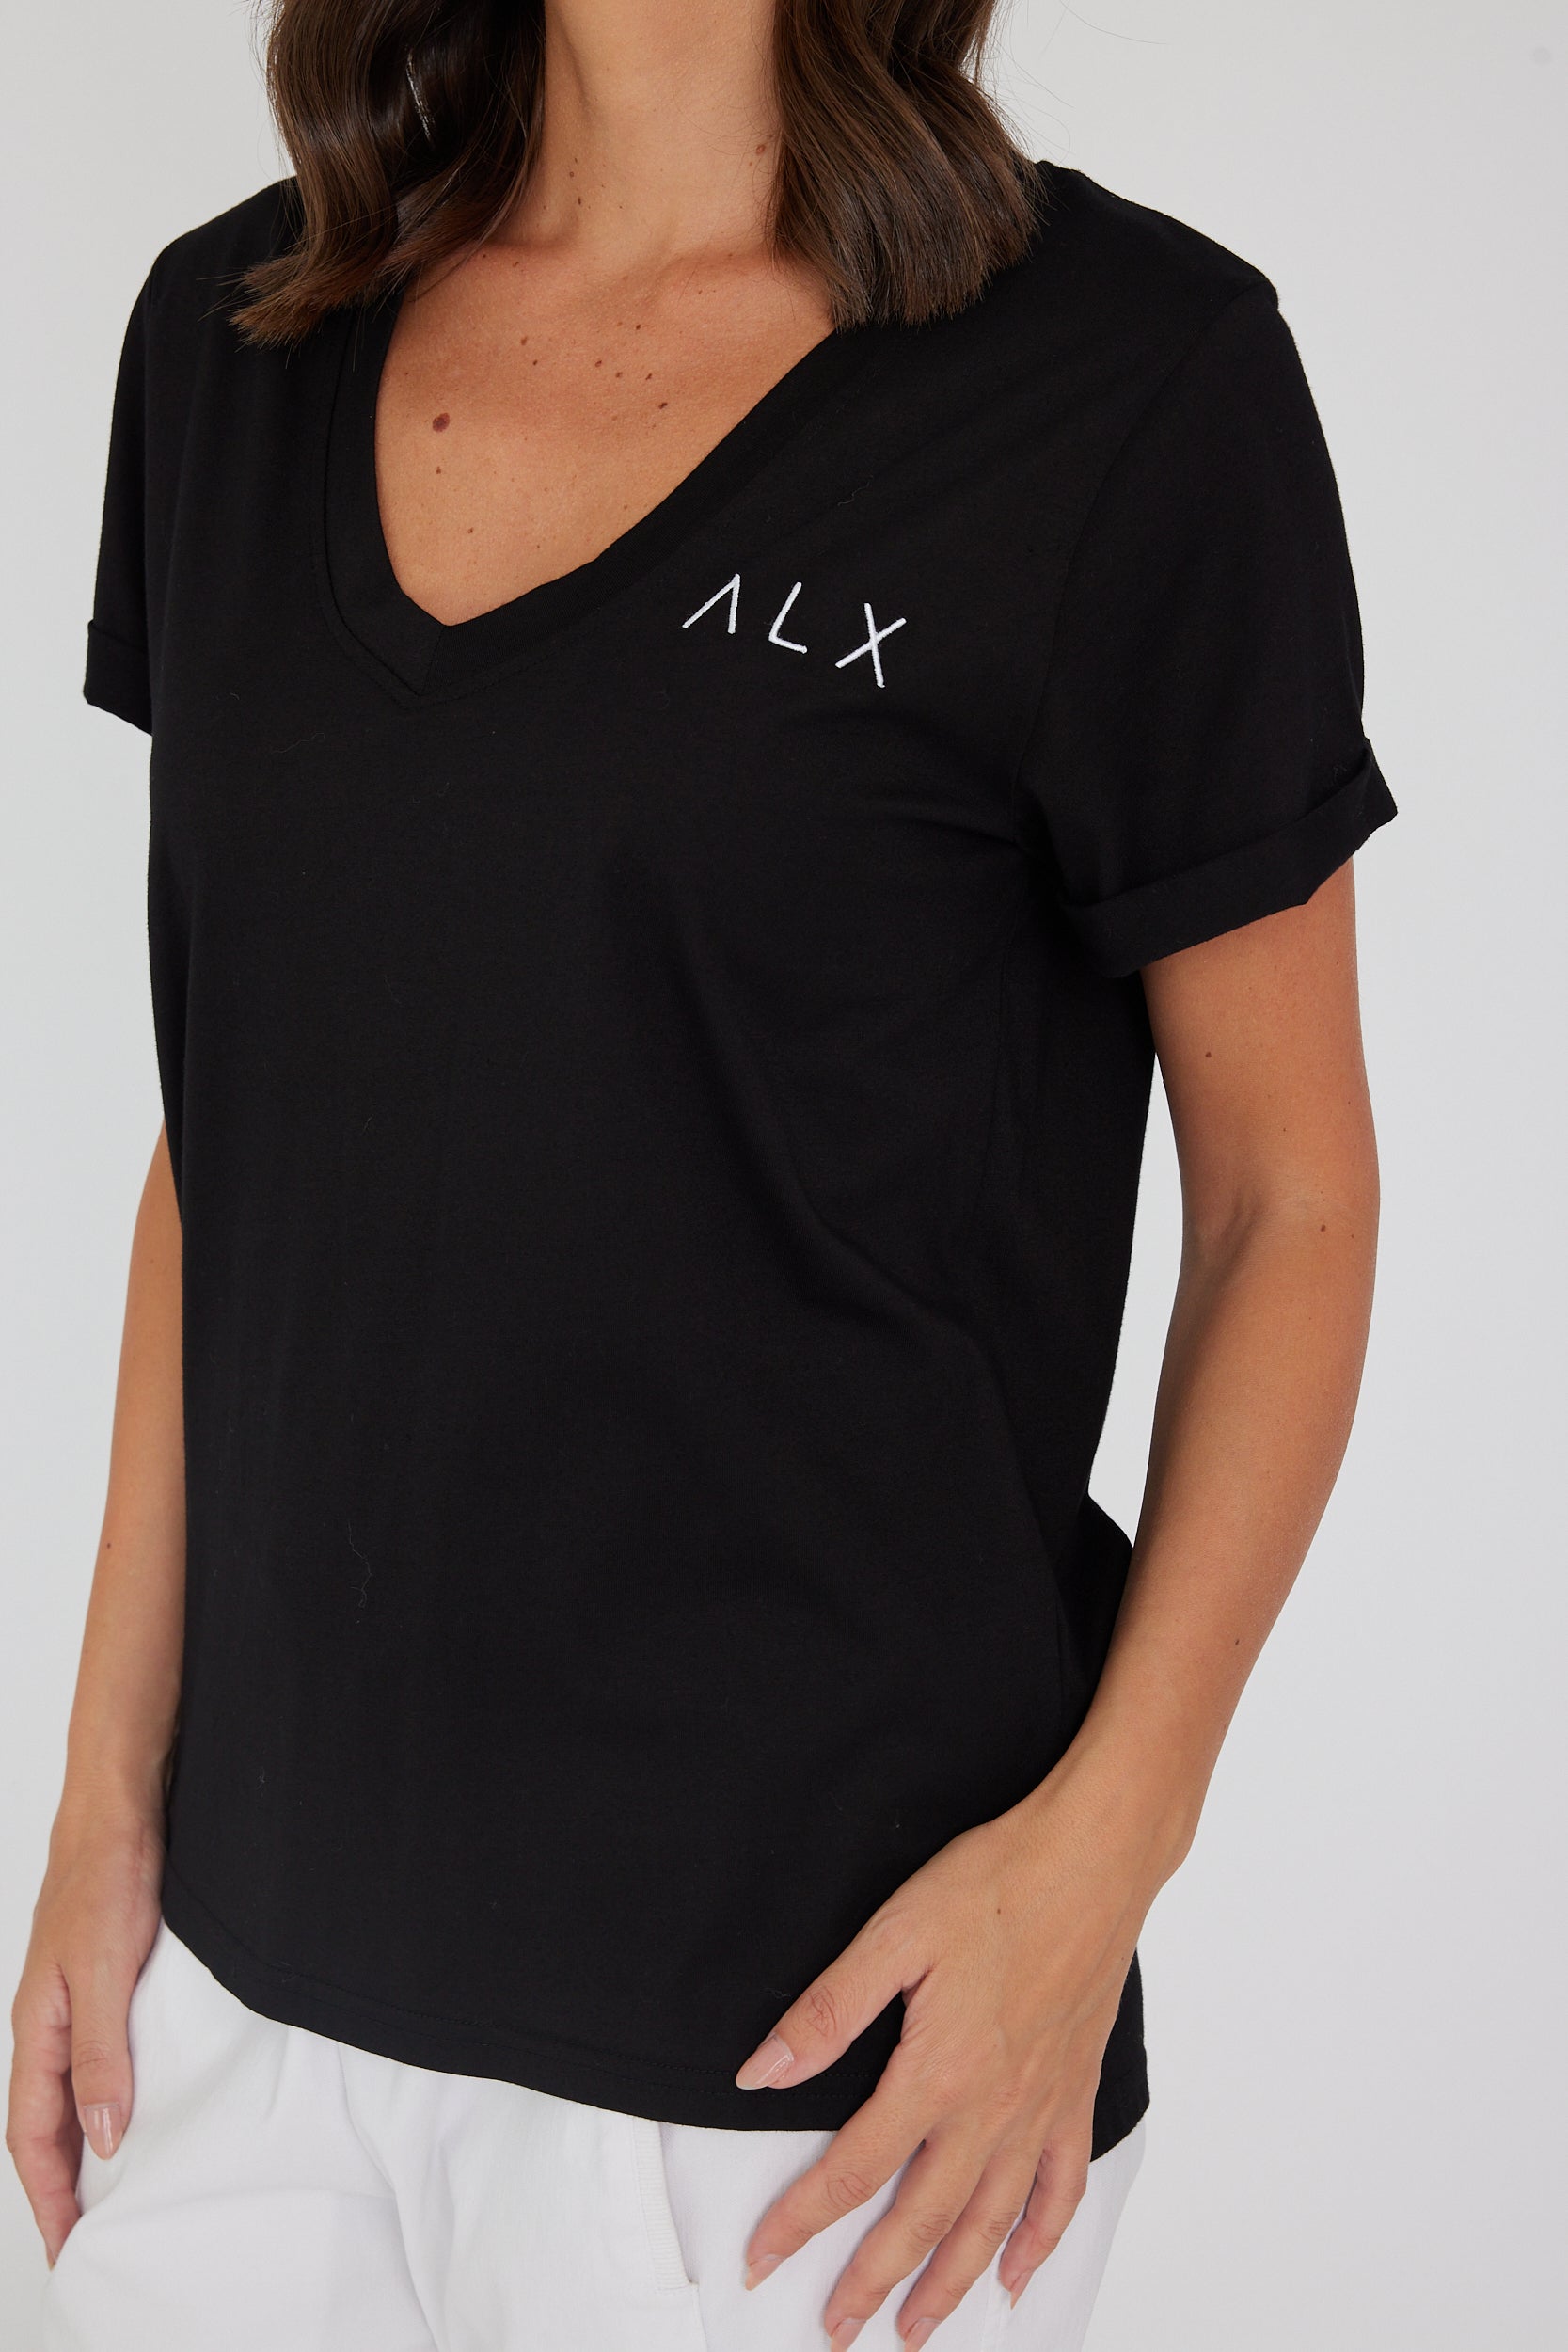 ALX V-Neck Black